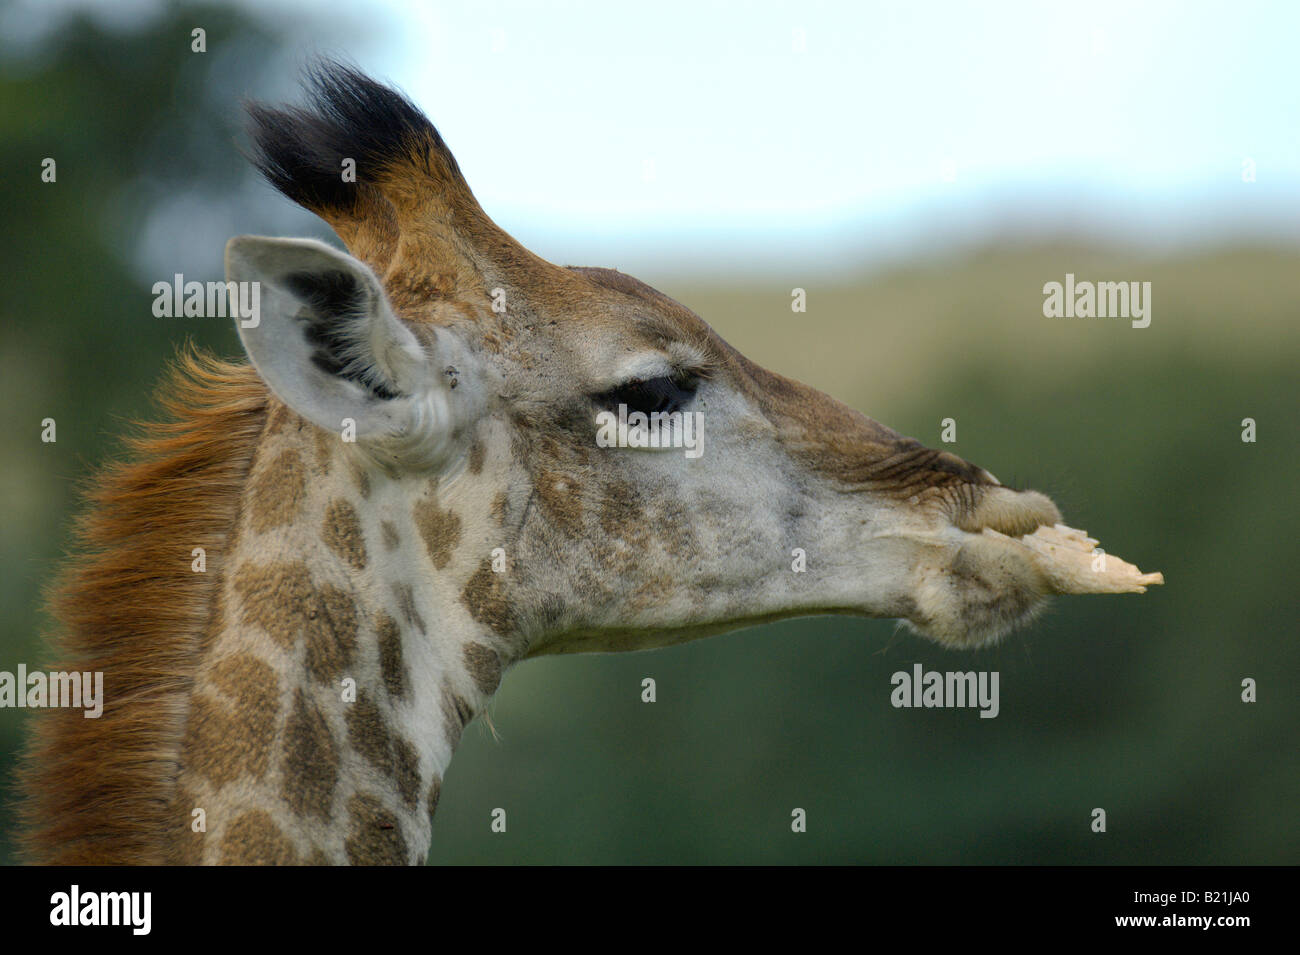 Jirafa Giraffa cameleopardalis grandes mamíferos africanos más alto cuello cuello largo gran corazón grandes ojos y cabeza explorador navega en t Foto de stock